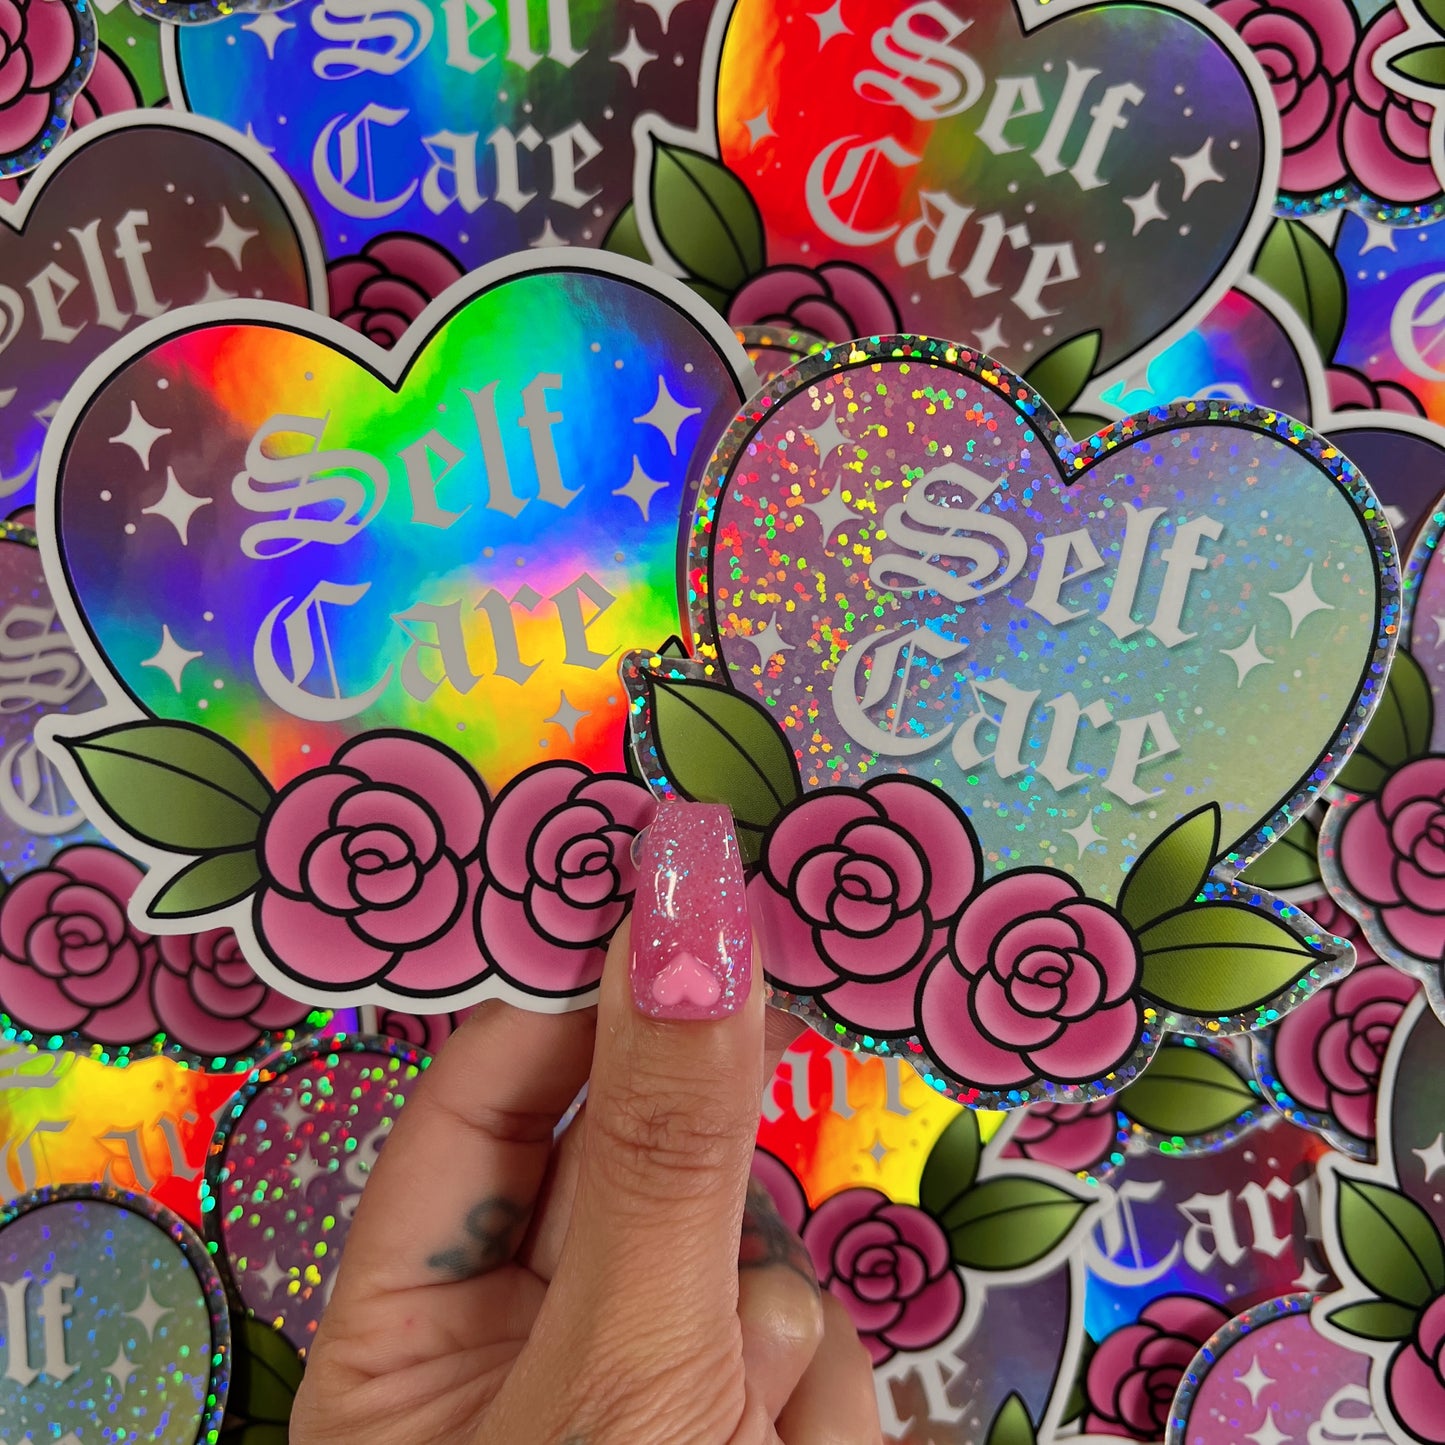 Self Care - Holographic/Glitter Sticker